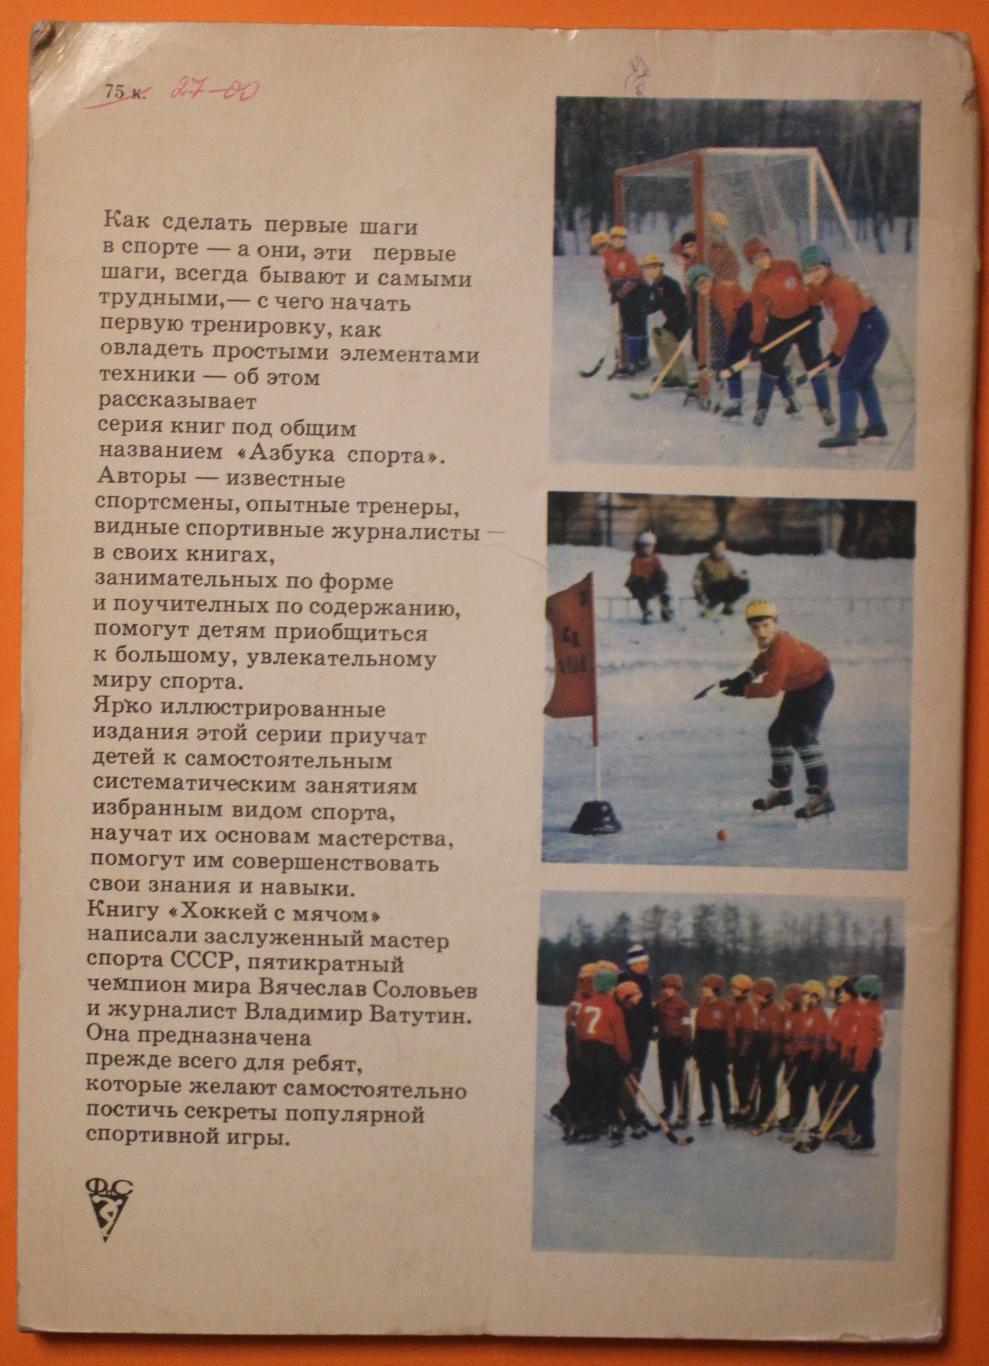 В.Соловьёв, В.Ватутин Хоккей с мячом из серии Азбука спорта 1